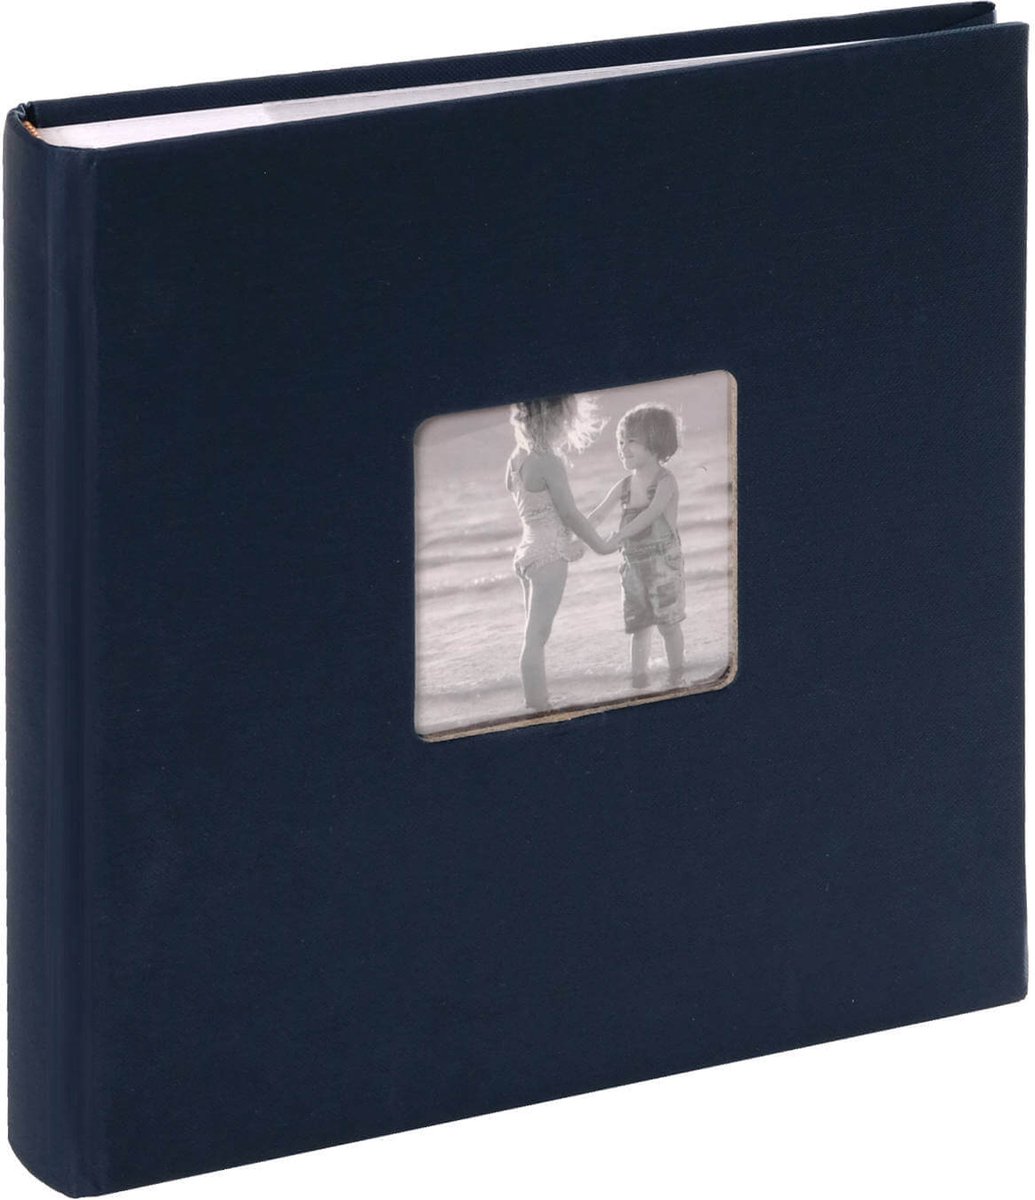 SecaDesign Fotoalbum insteek Vita donker blauw - 100 foto's 10x15 - Insteekalbum memo - SecaDesign